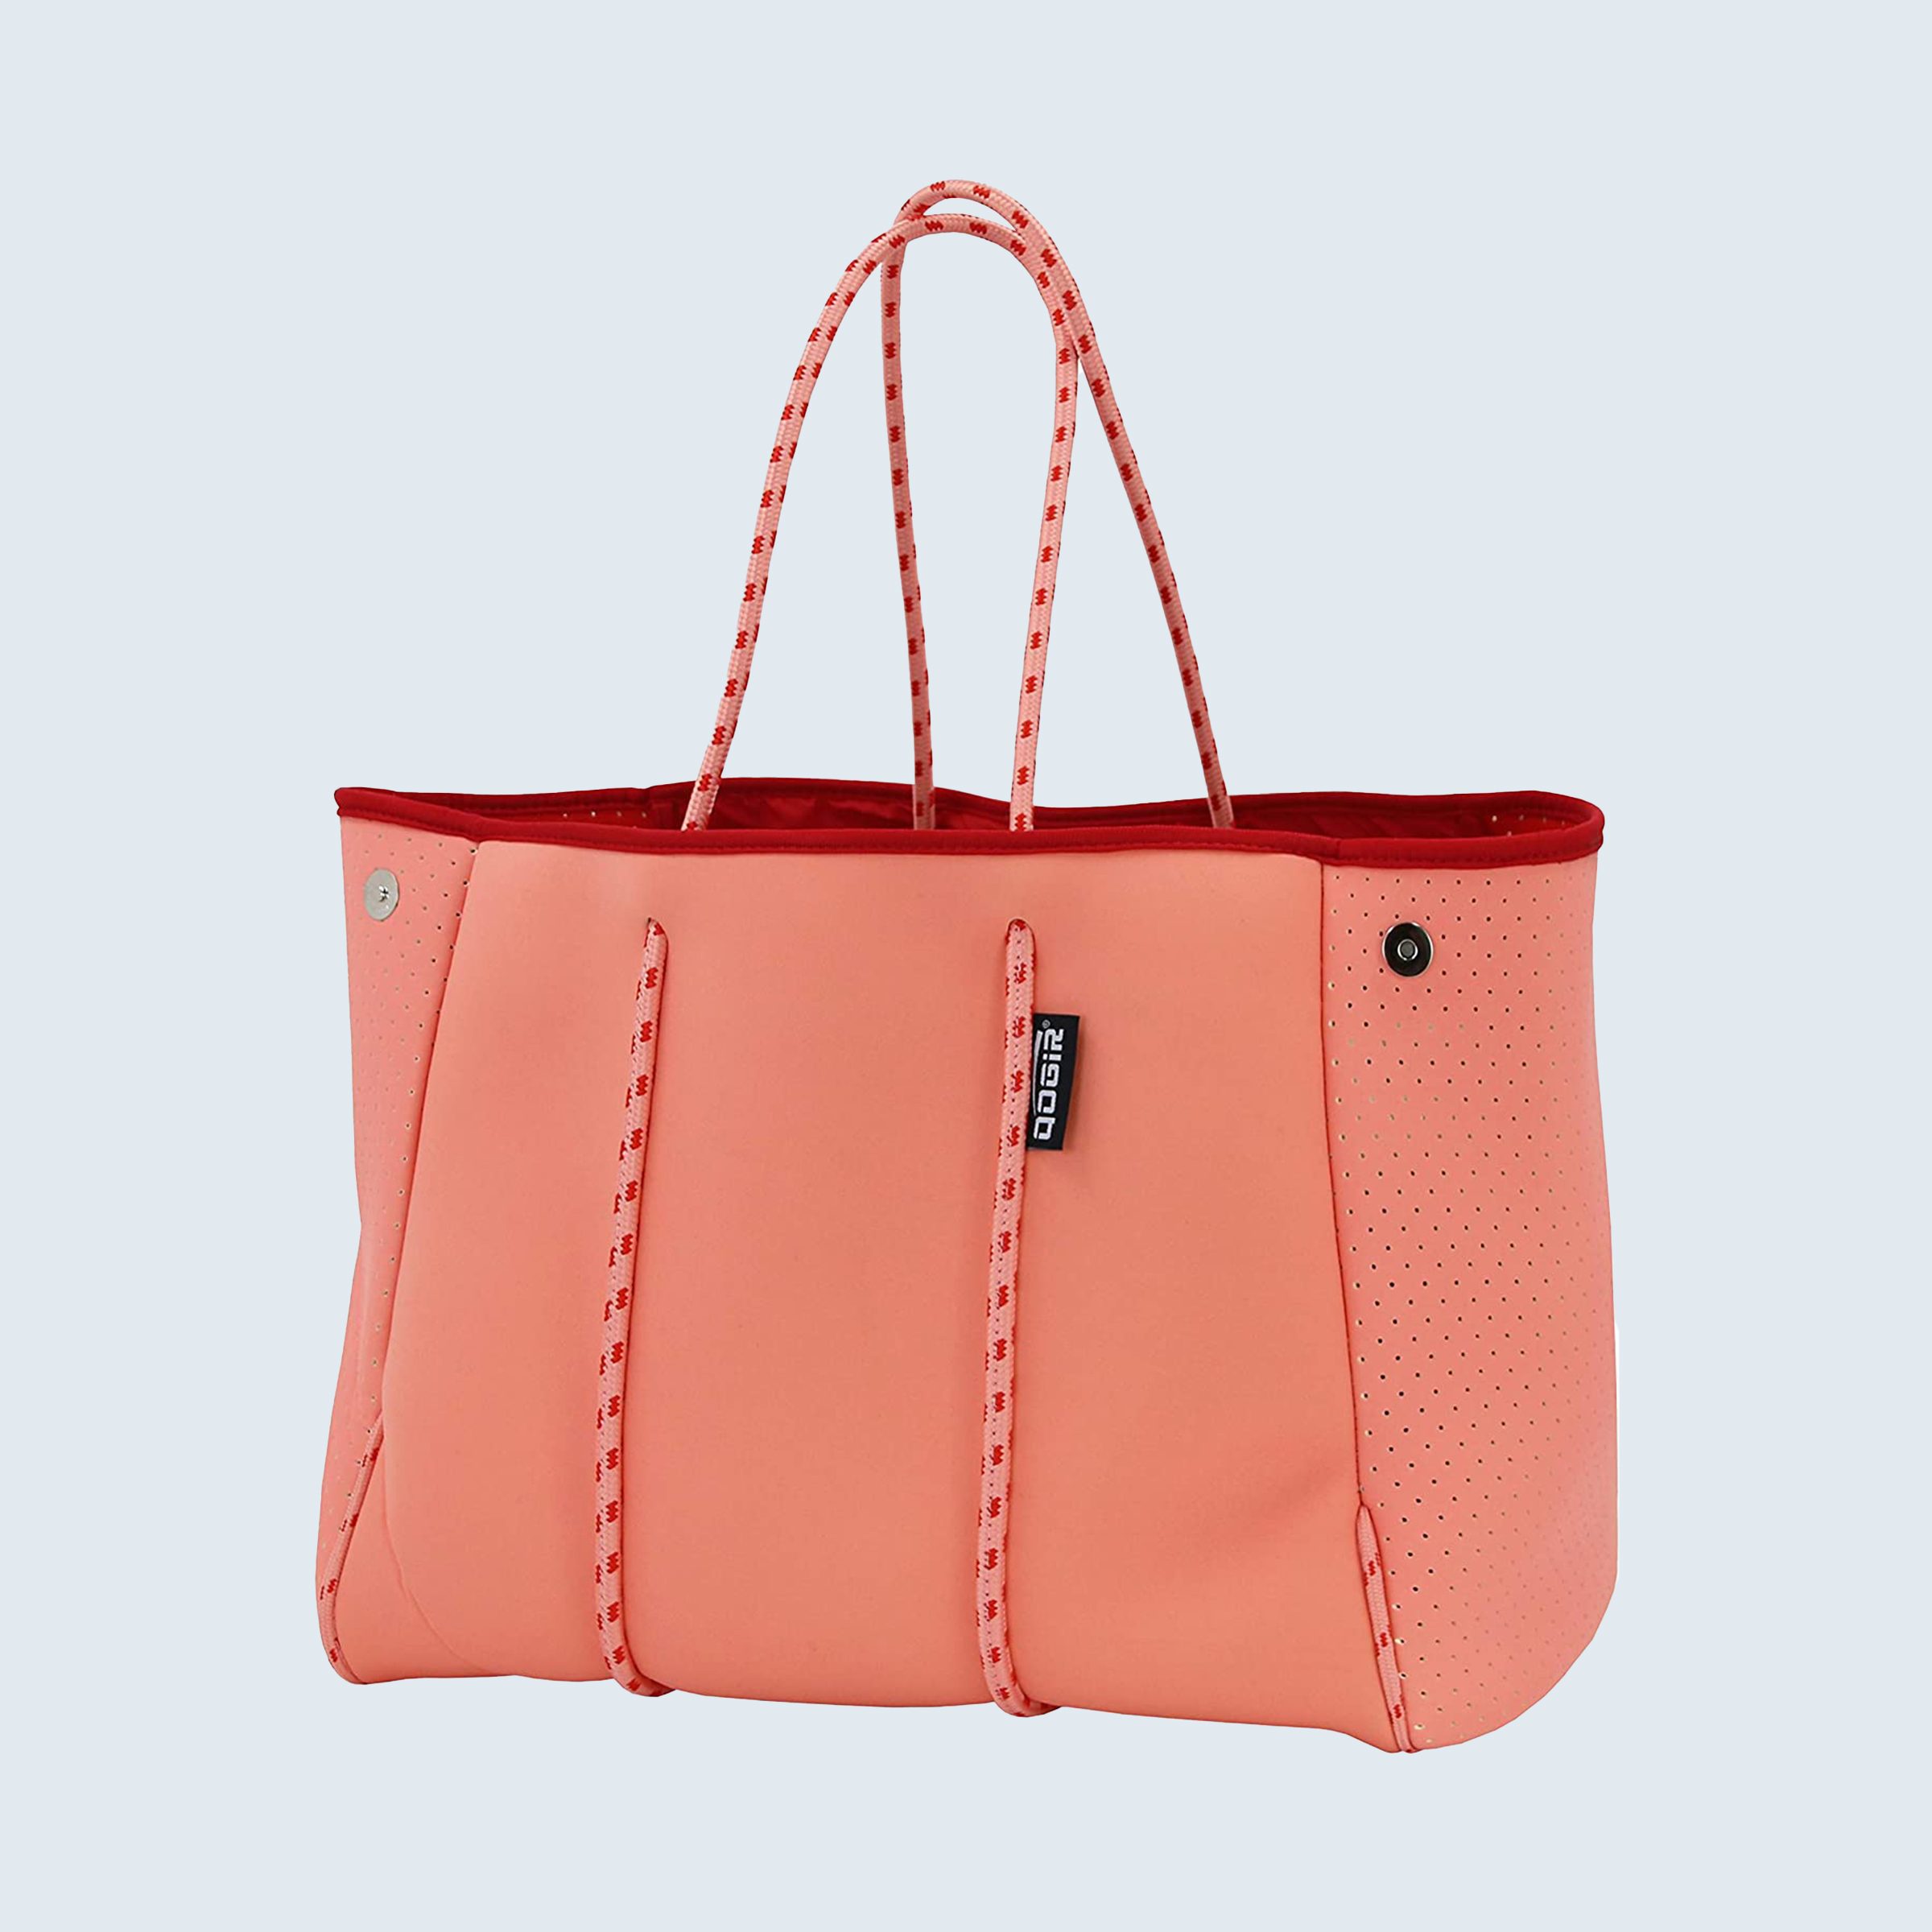 MONTOJ MOM ROSE Beach Bags Totes Women Handbag